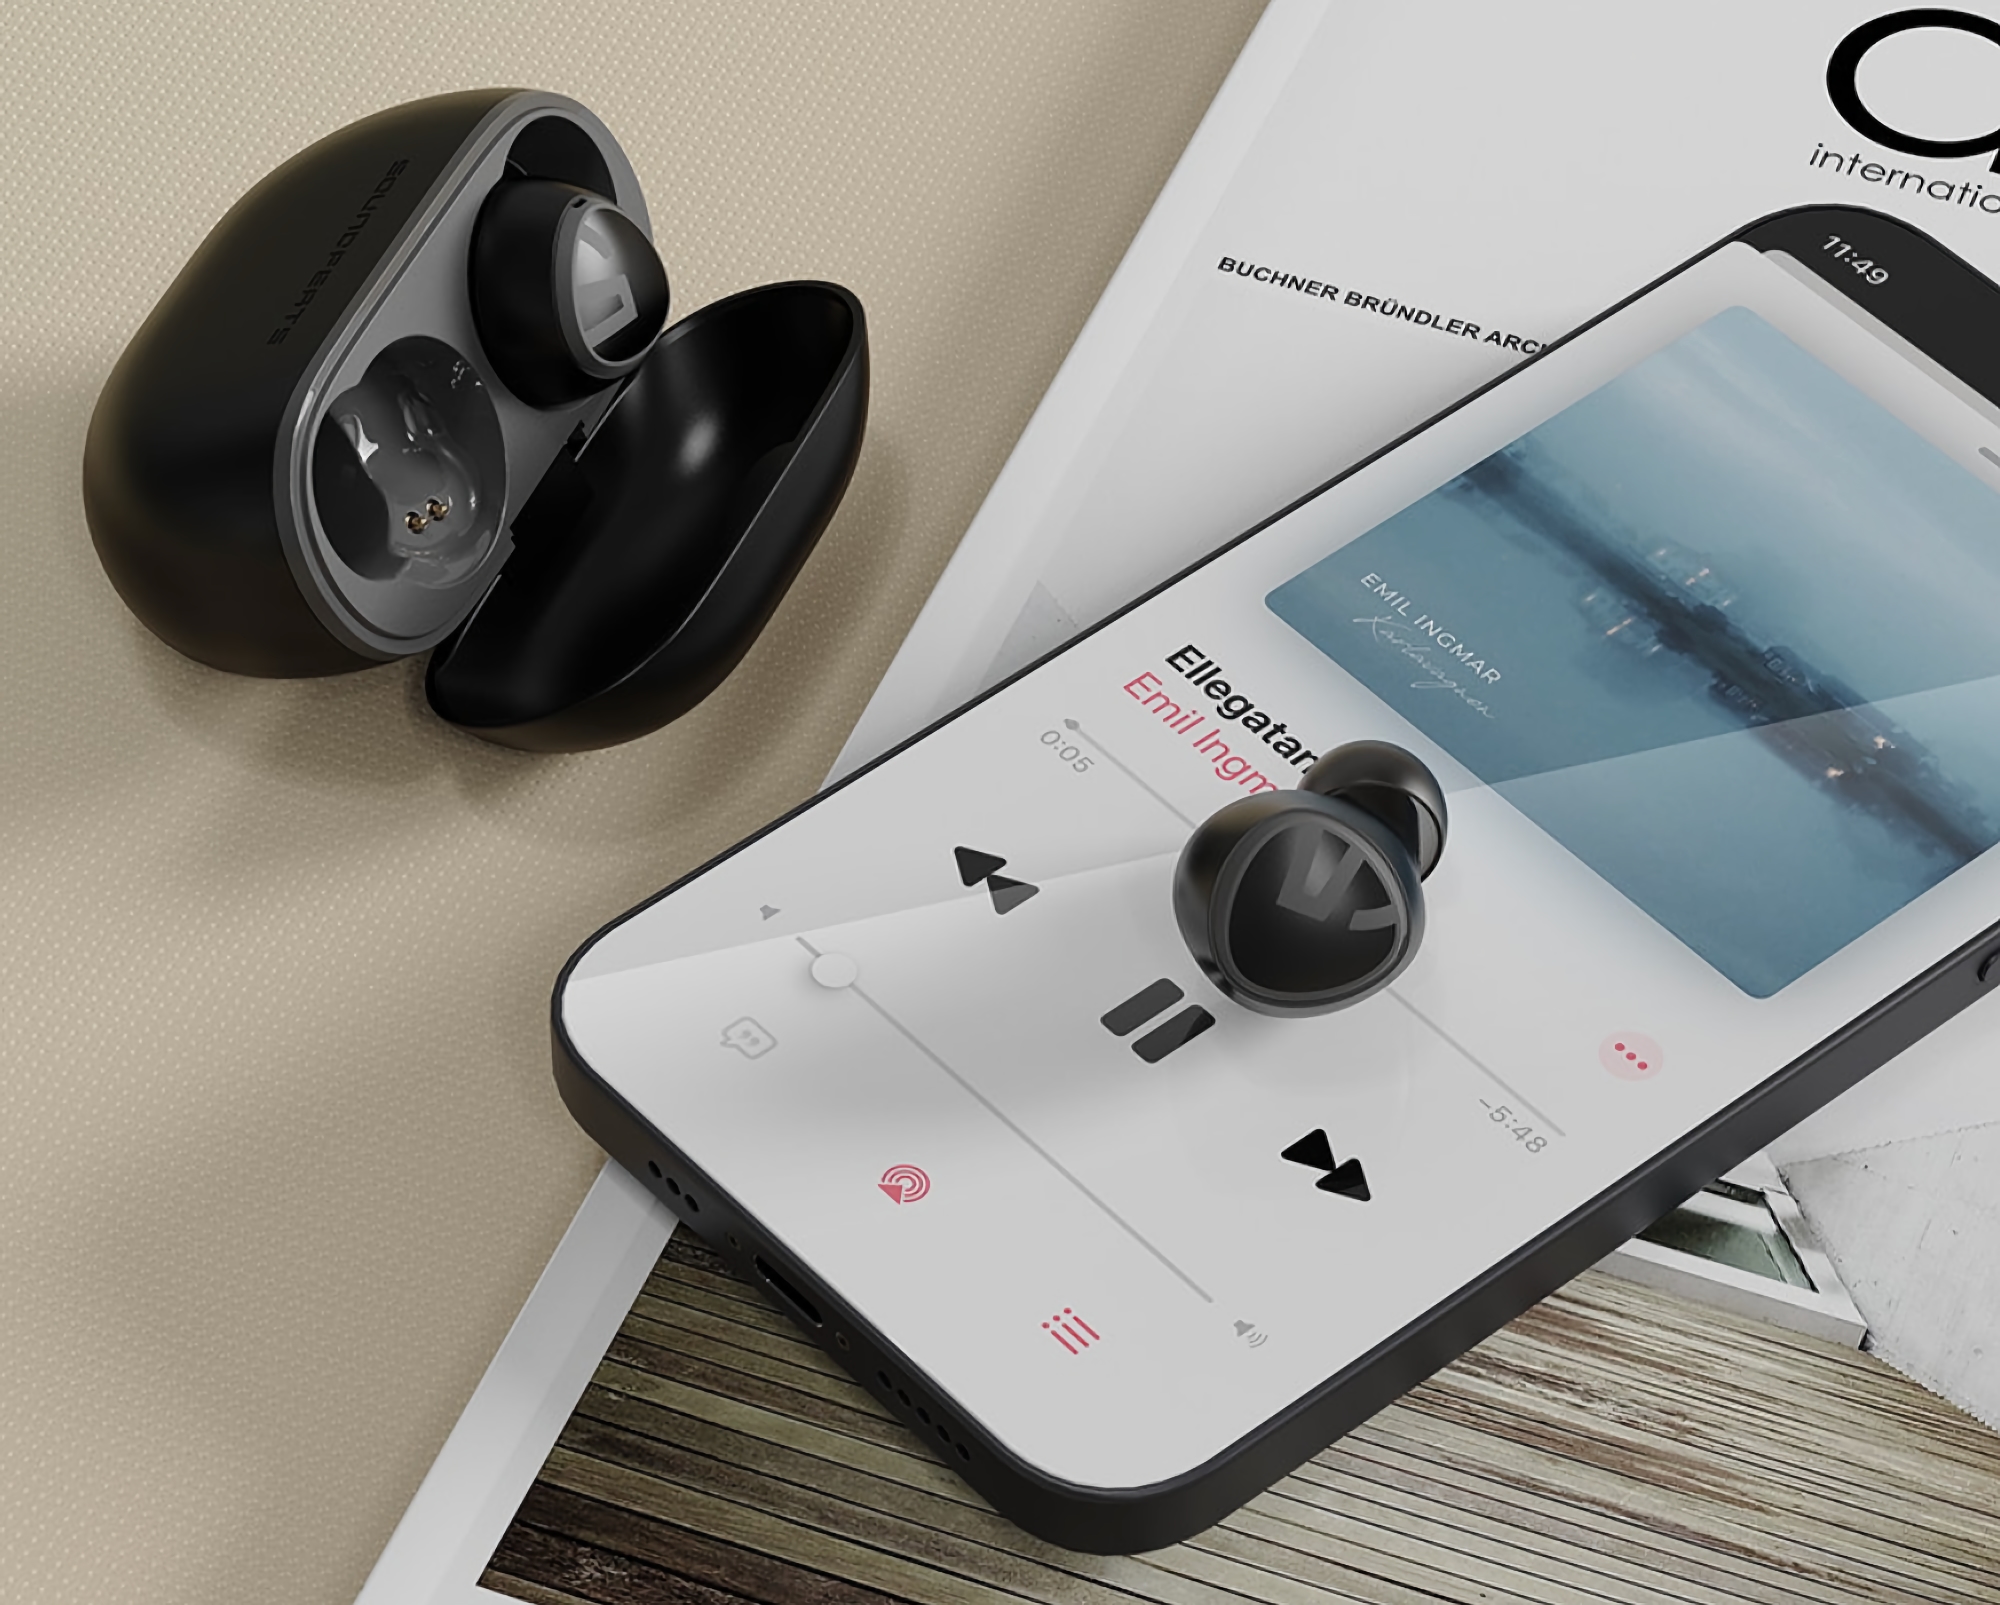 Soundpeats Mini : casque TWS avec protection IPX5, Bluetooth 5.2 et autonomie jusqu'à 20 heures pour 27 $